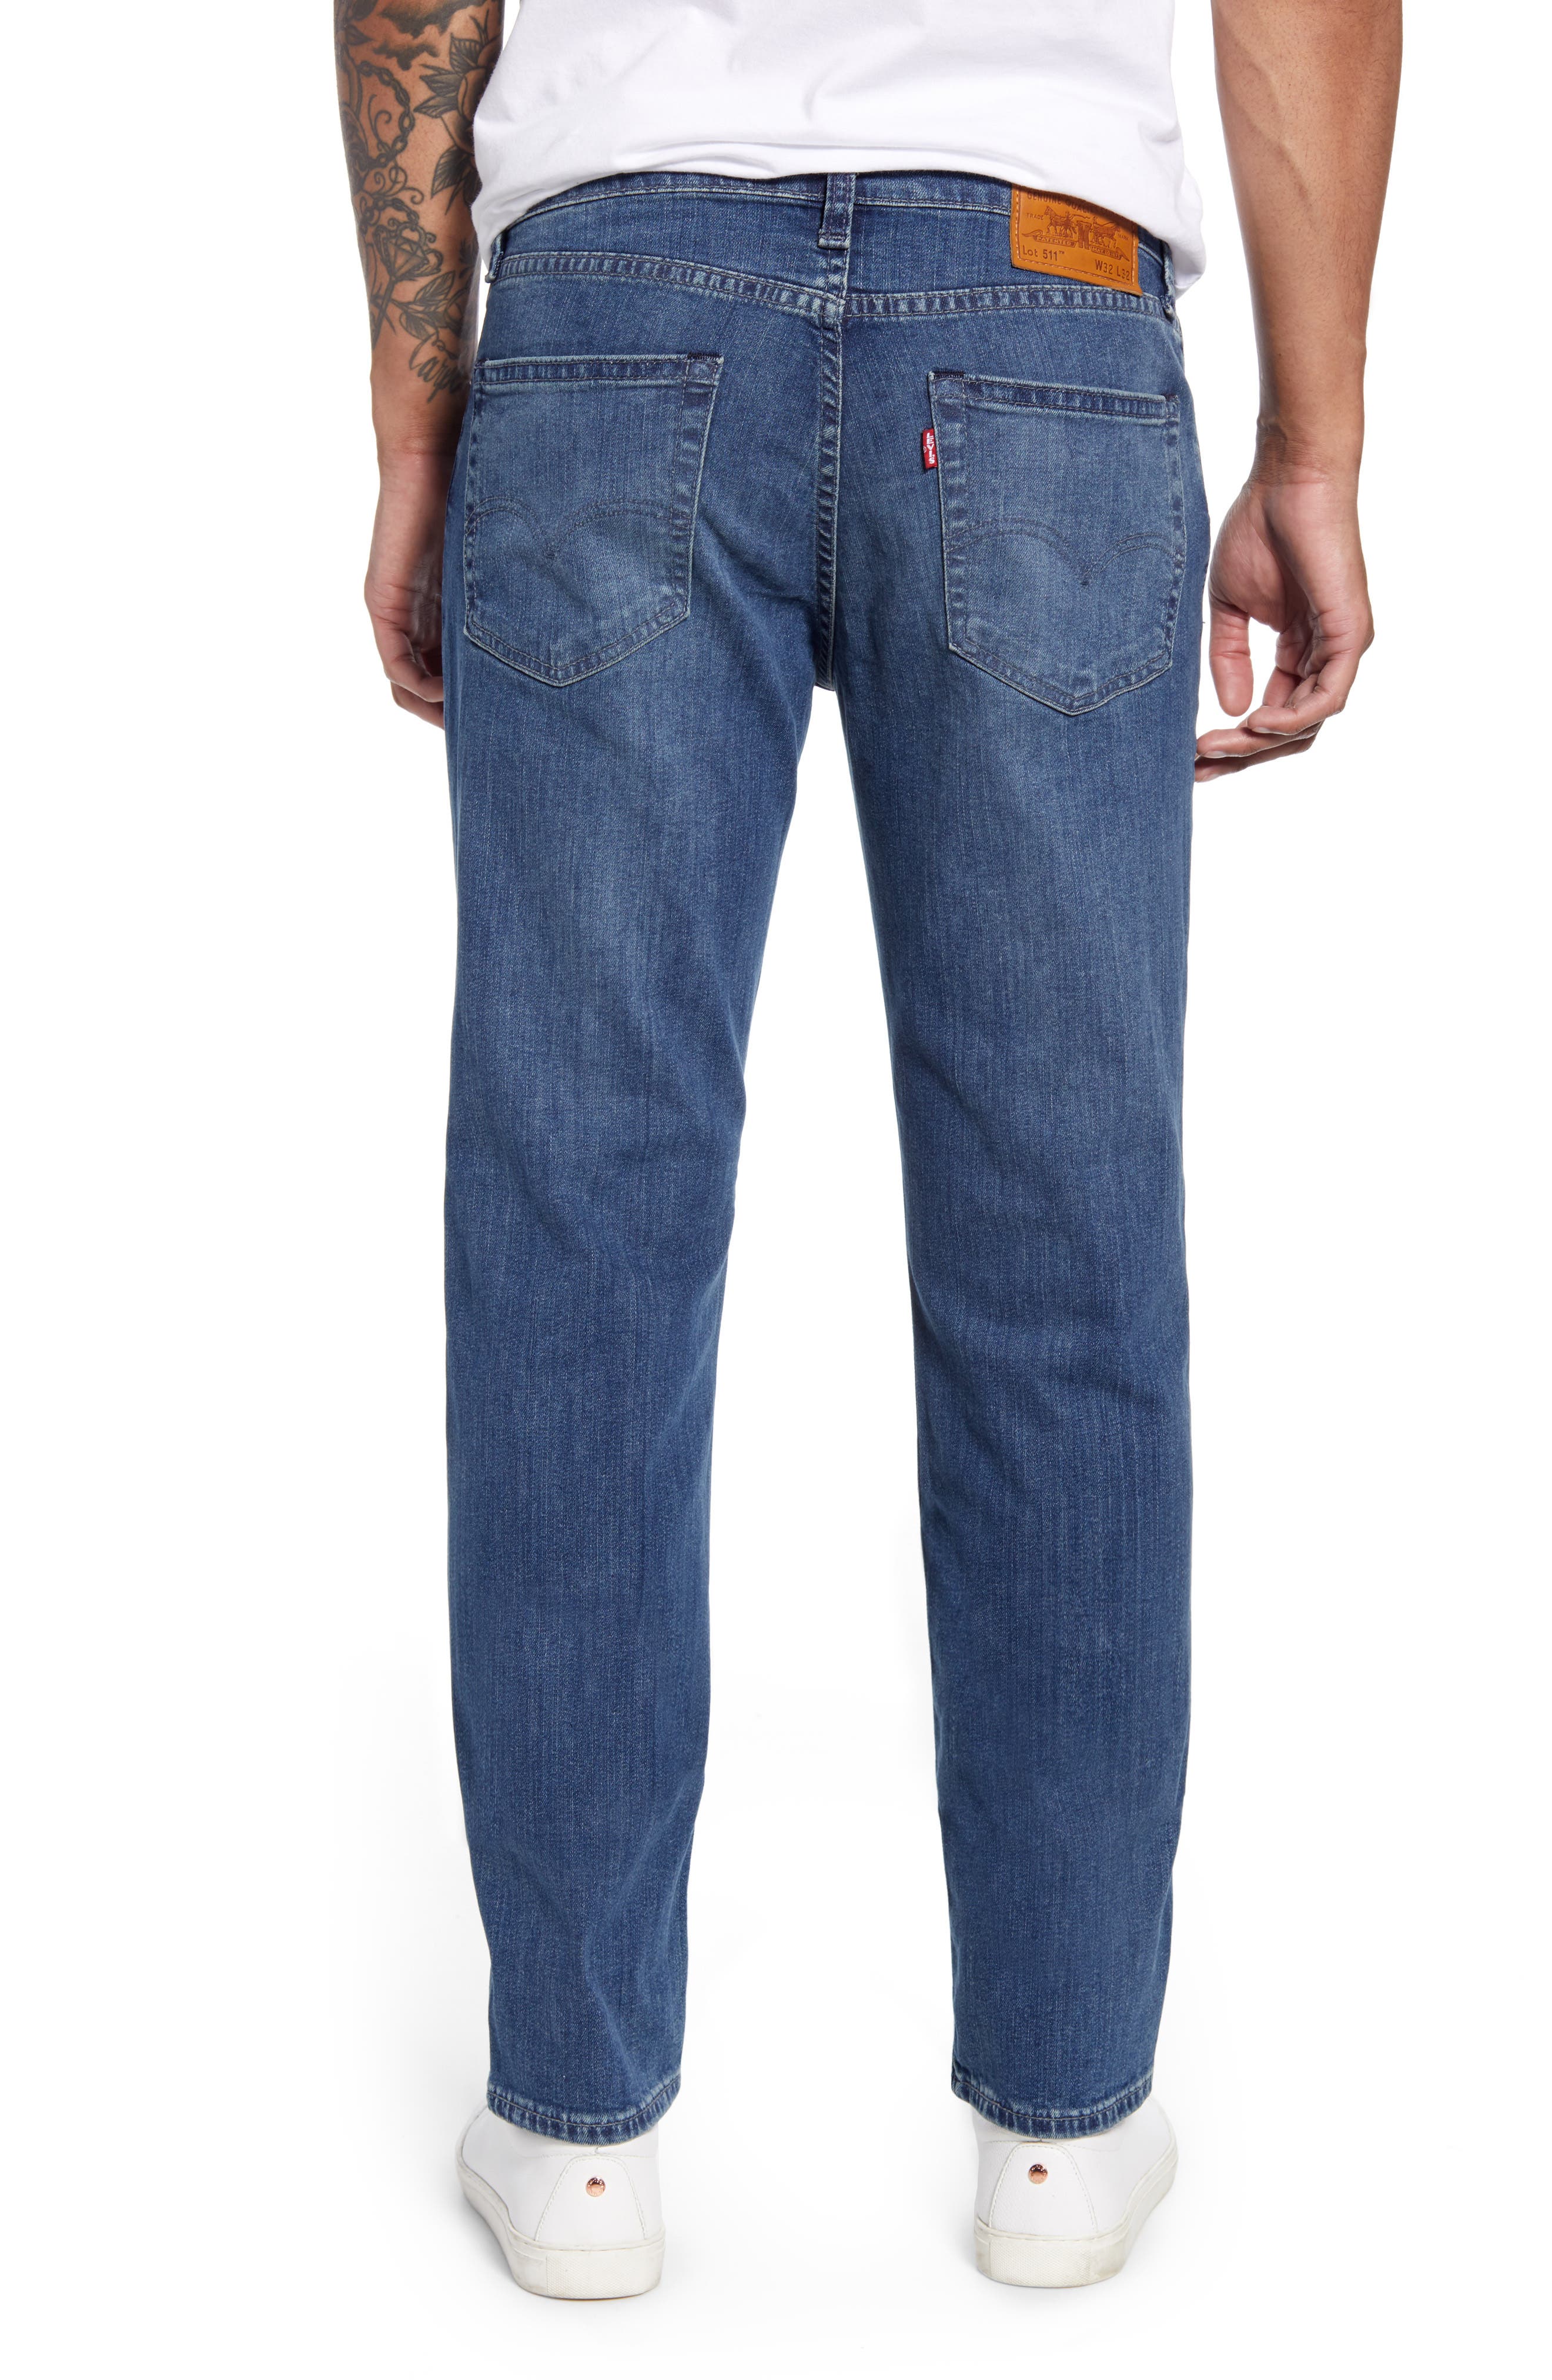 levis 511 jeans 33x32